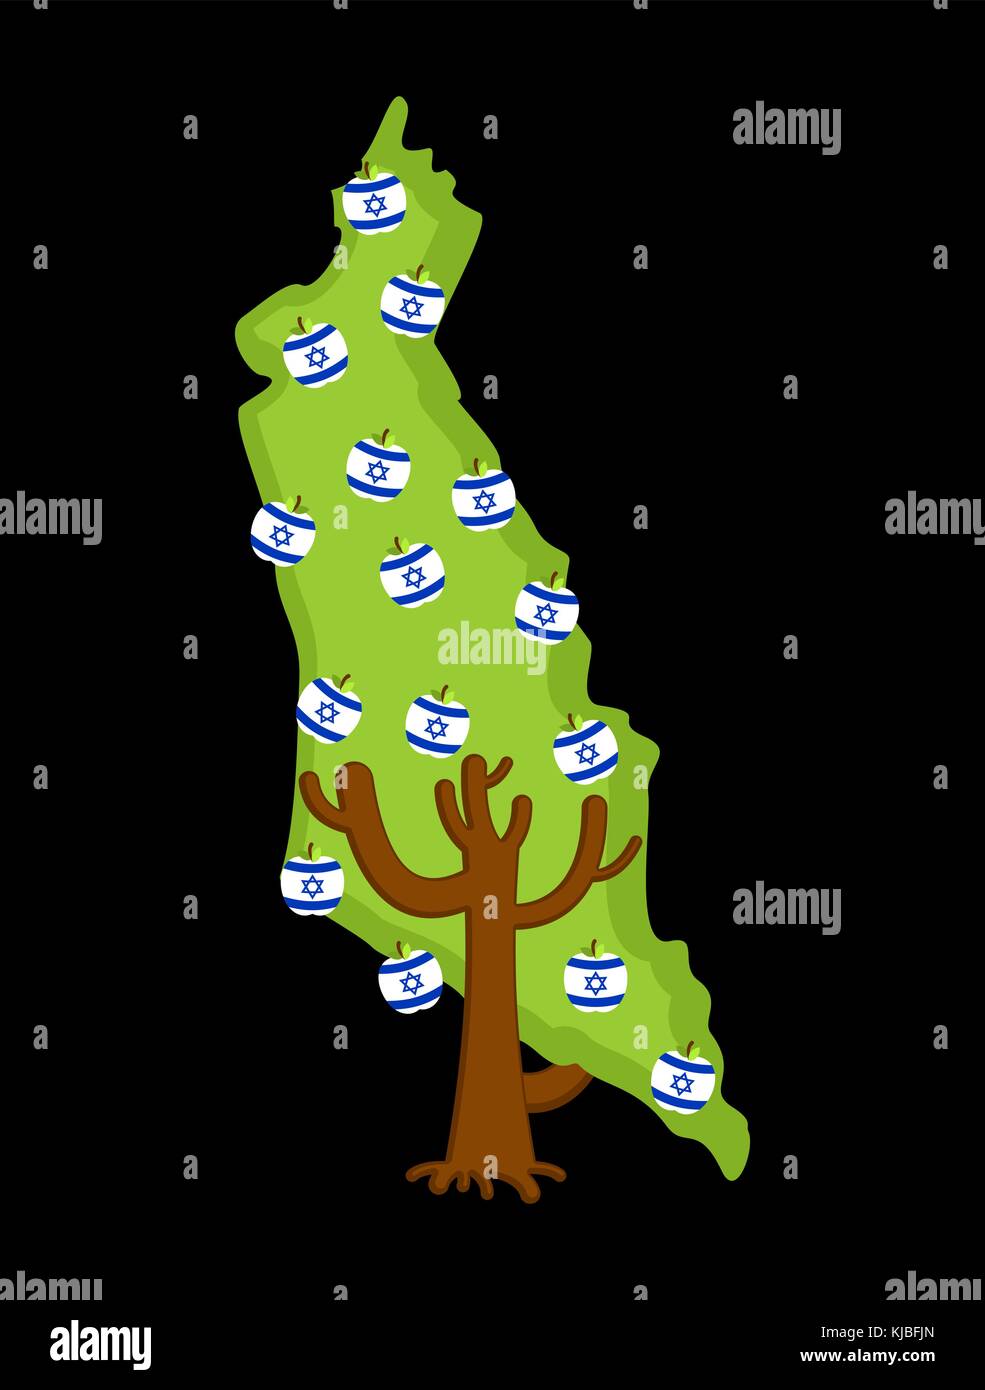 Struttura patriottica israele mappa. albero di mele e mele bandiera israeliana. stato nazionale impianto. illustrazione vettoriale Illustrazione Vettoriale